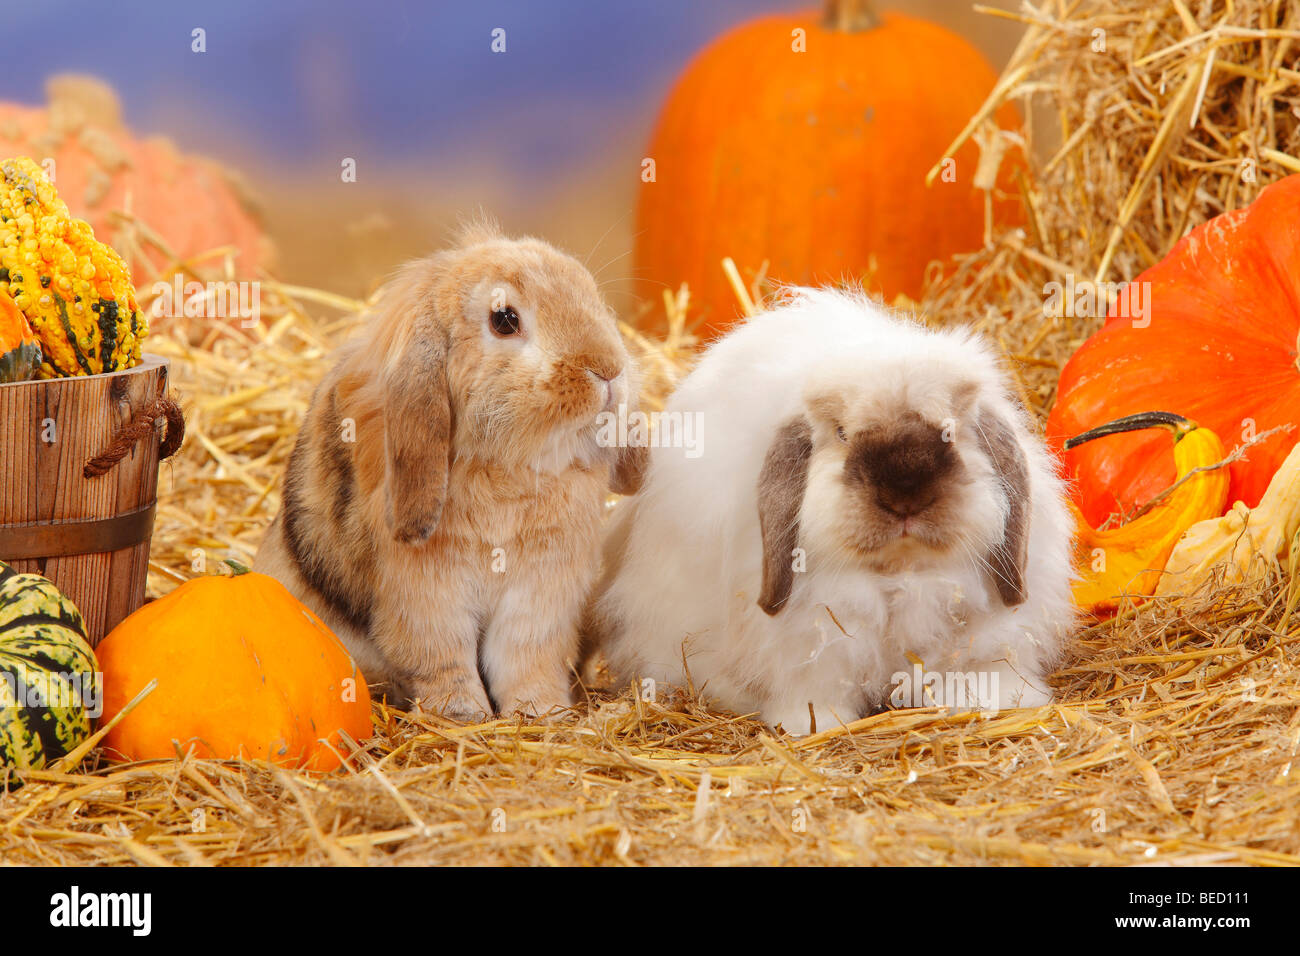 Lop-eared lapins Nains / lapin domestique, la paille Banque D'Images